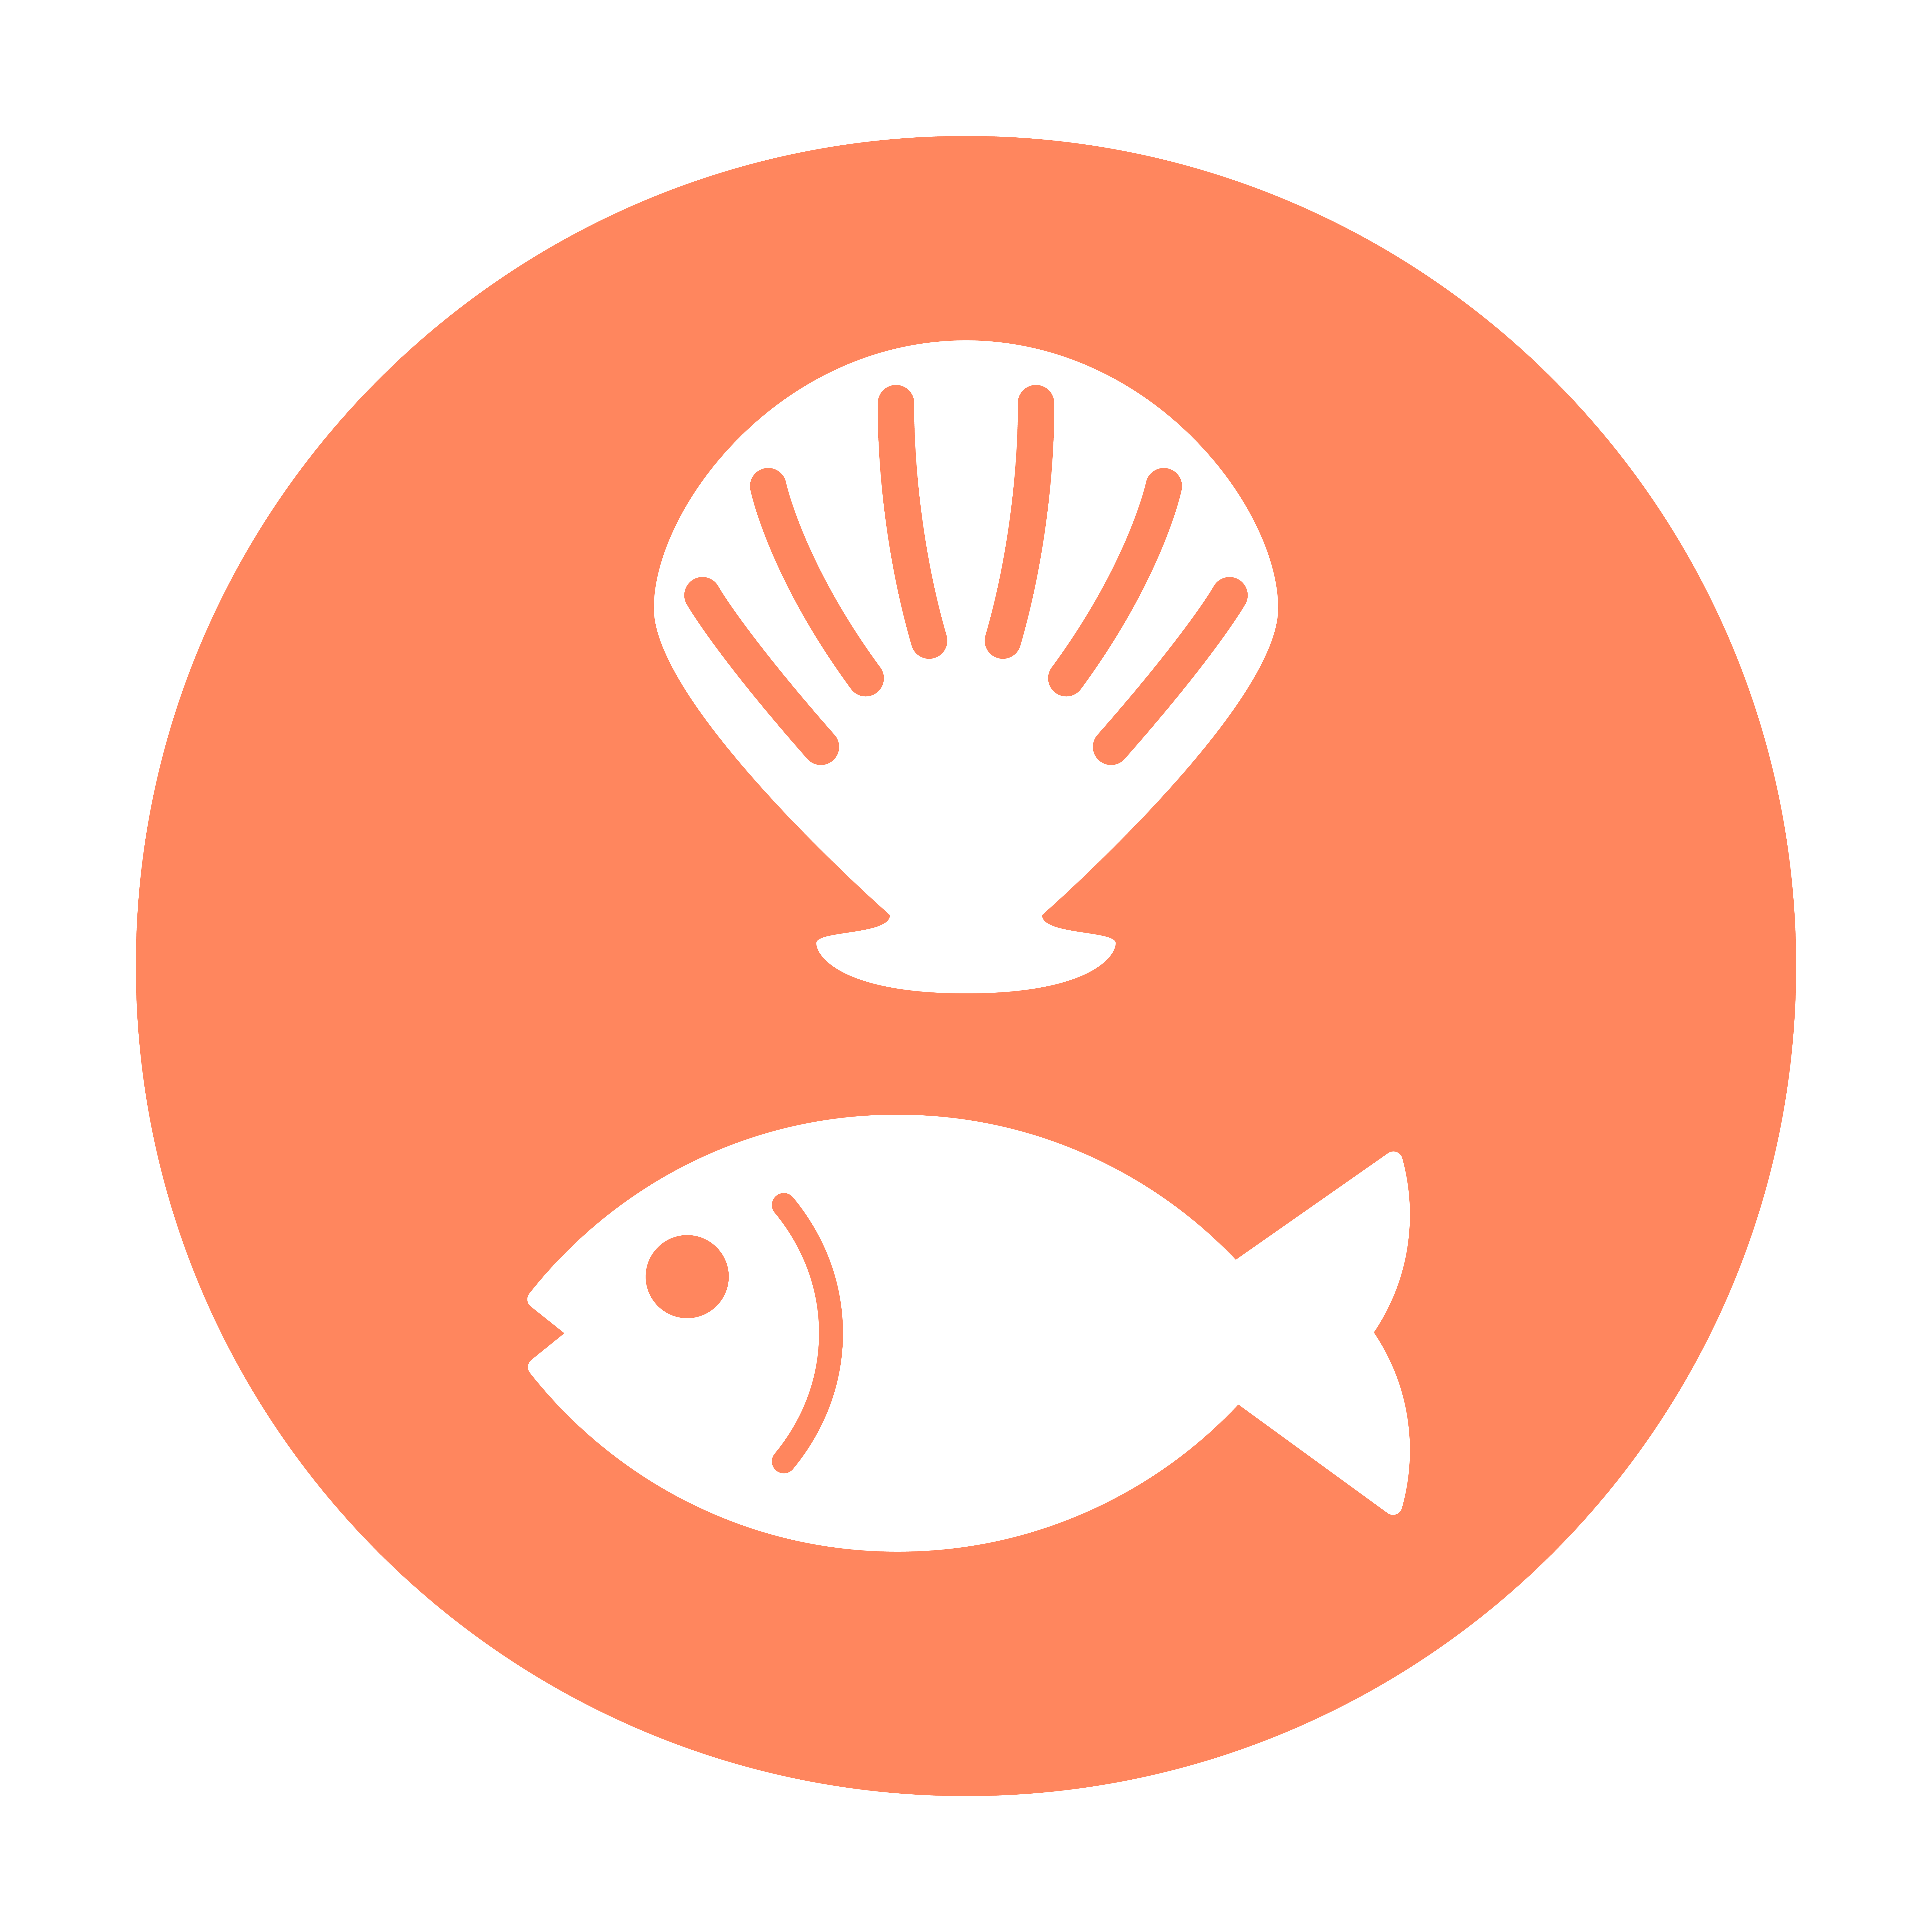 fish/shellfish allergen icon